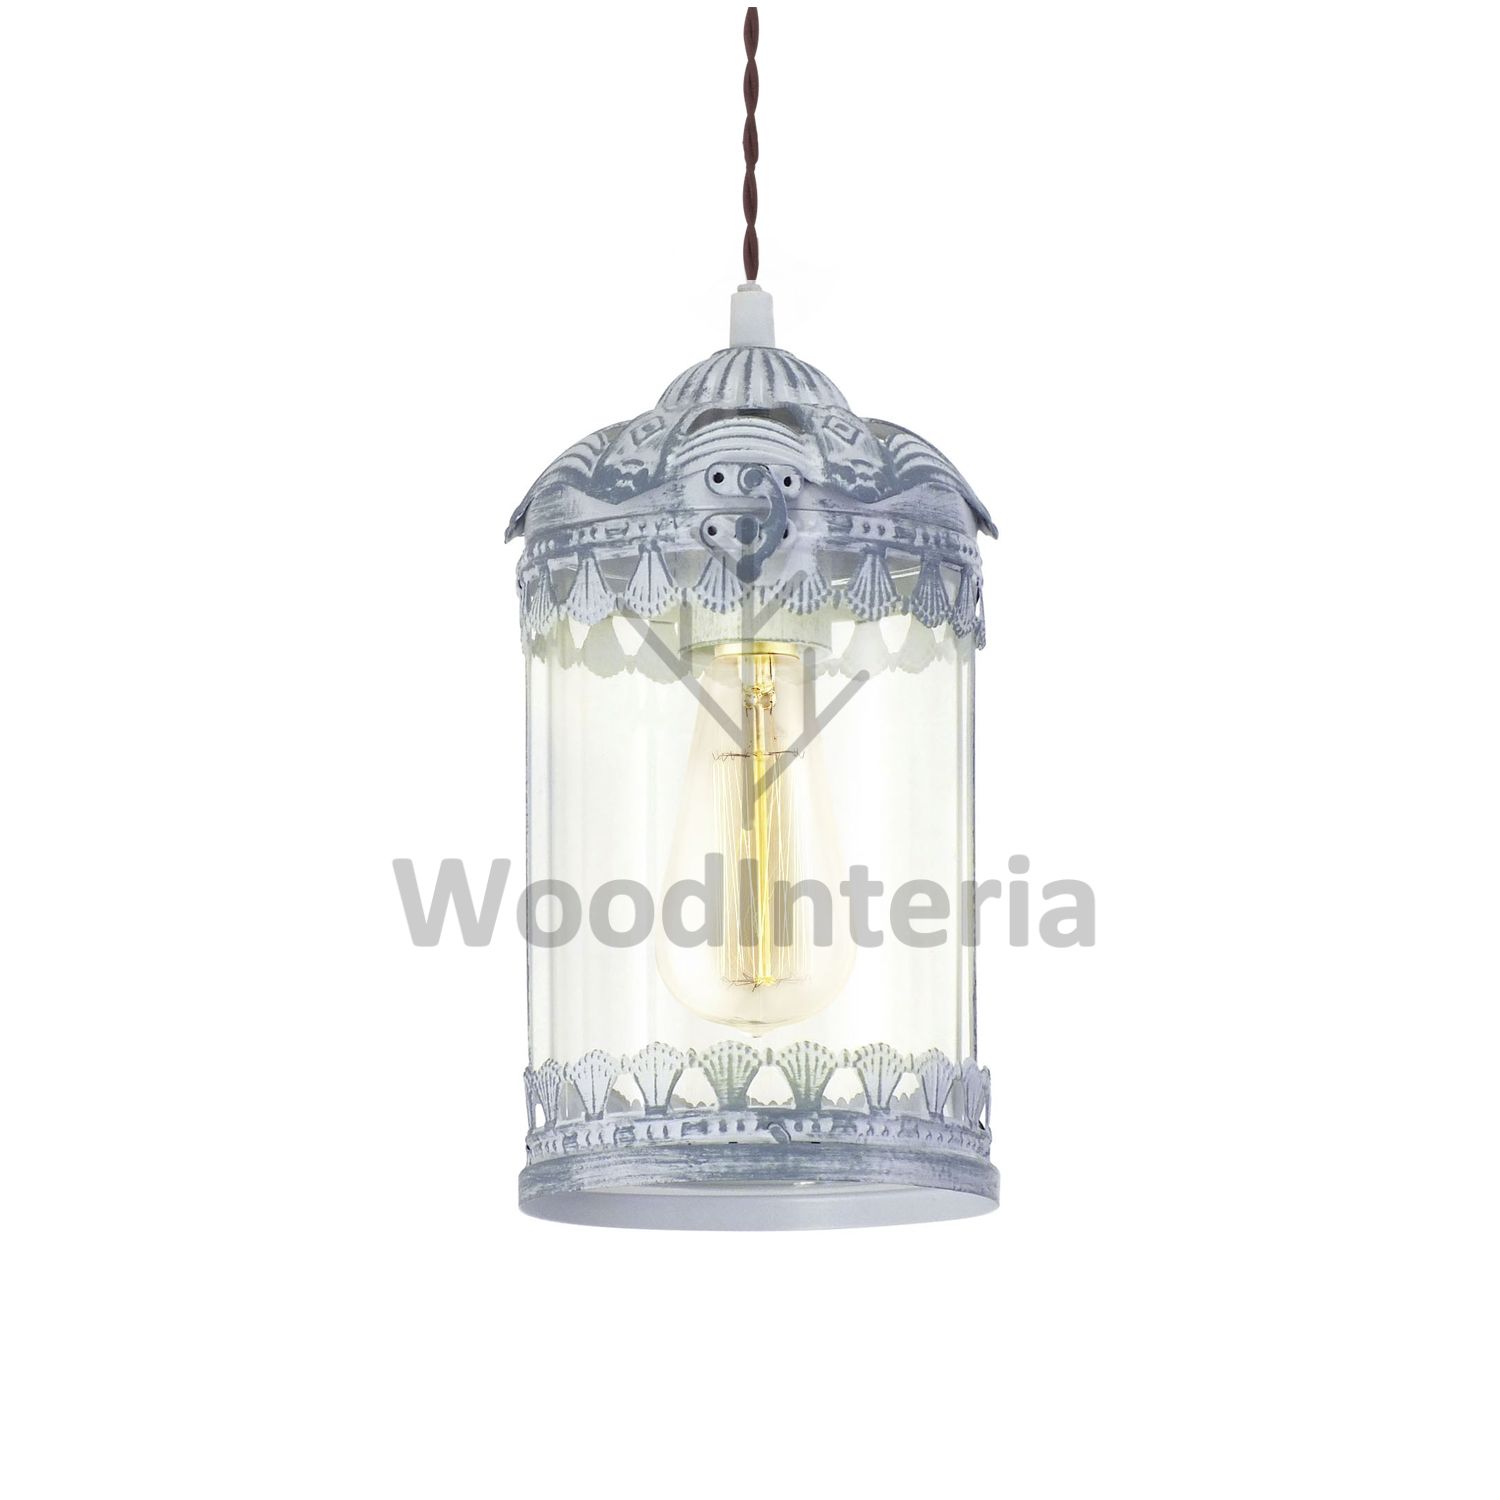 фото подвесной светильник vintage thread gray-blue в скандинавском интерьере лофт эко | WoodInteria